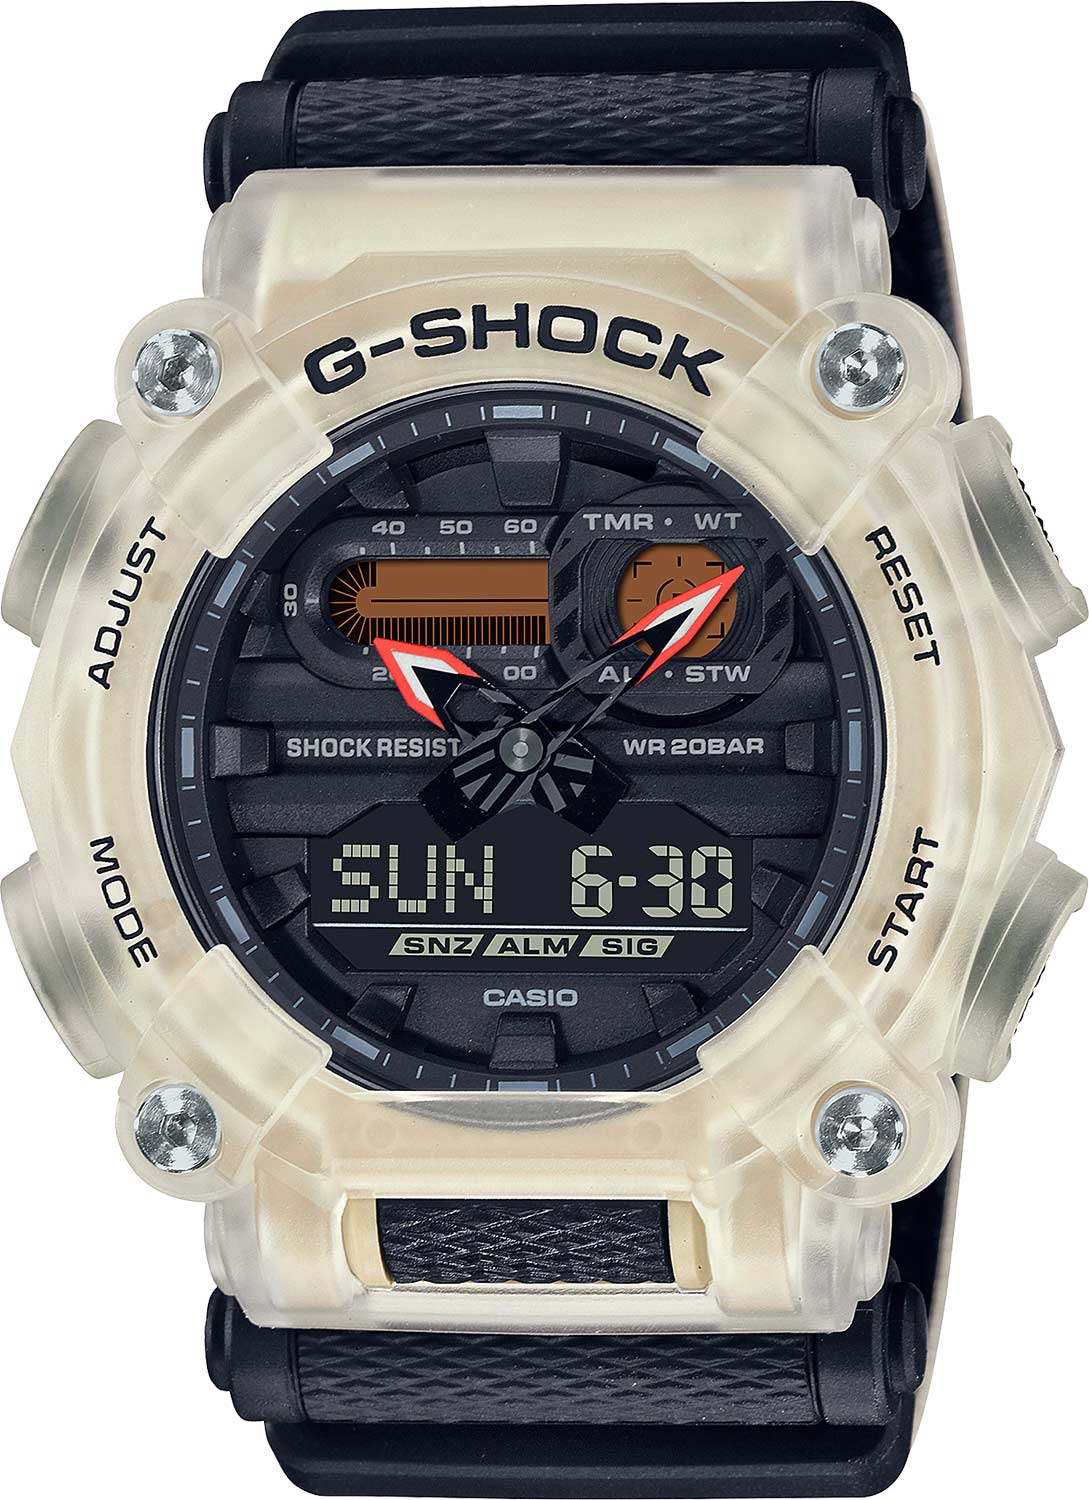 Японские наручные часы Casio G-SHOCK GA-900TS-4AER с хронографом